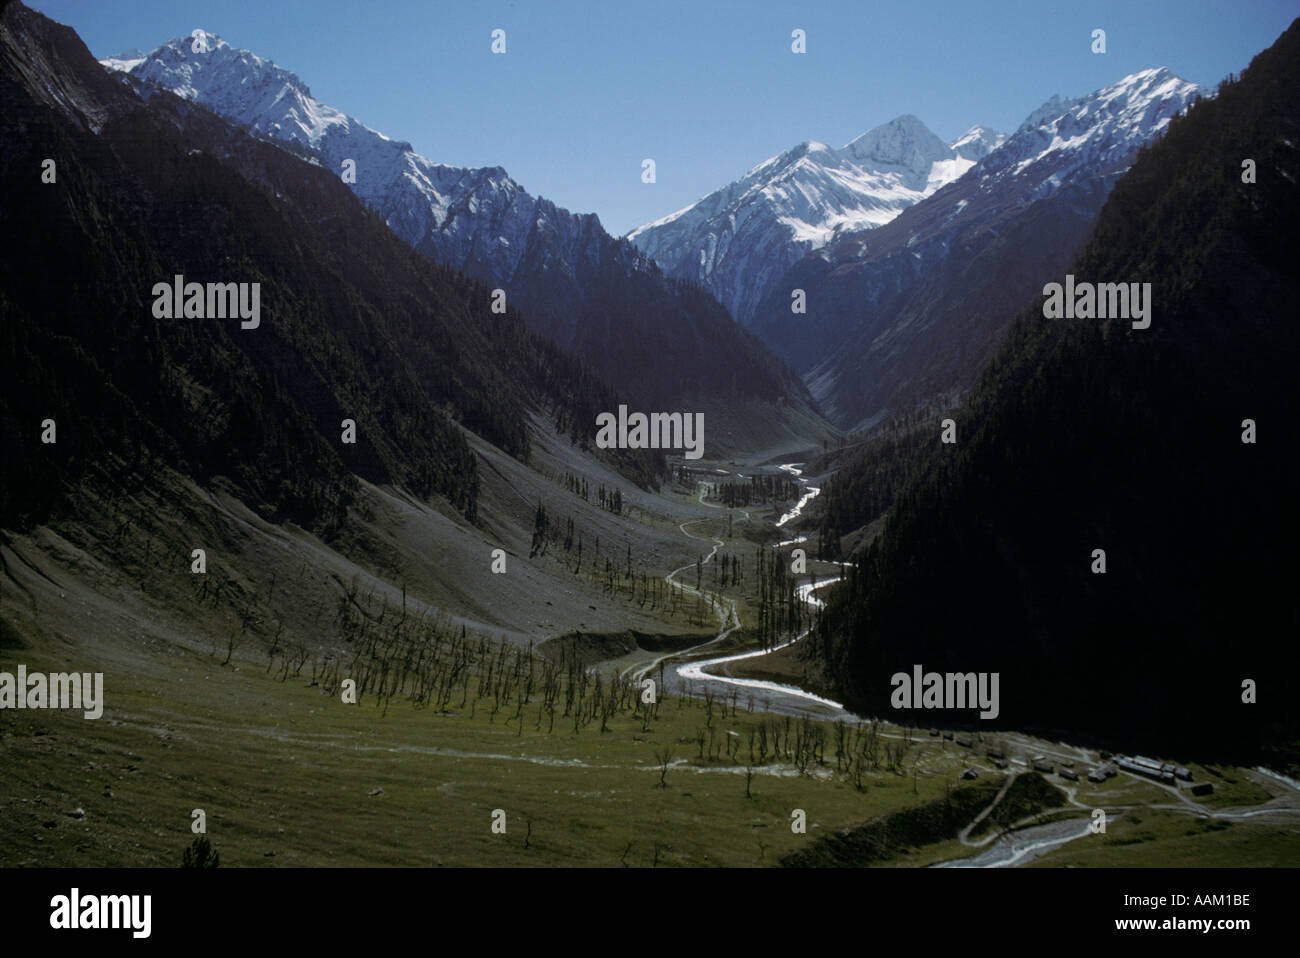 Himalaya-Gipfel und Tal des Flusses auf den Schmutz SRINIGAR LEH HIGHWAY von der indischen militärischen LADAKH Indien gepflegt Stockfoto